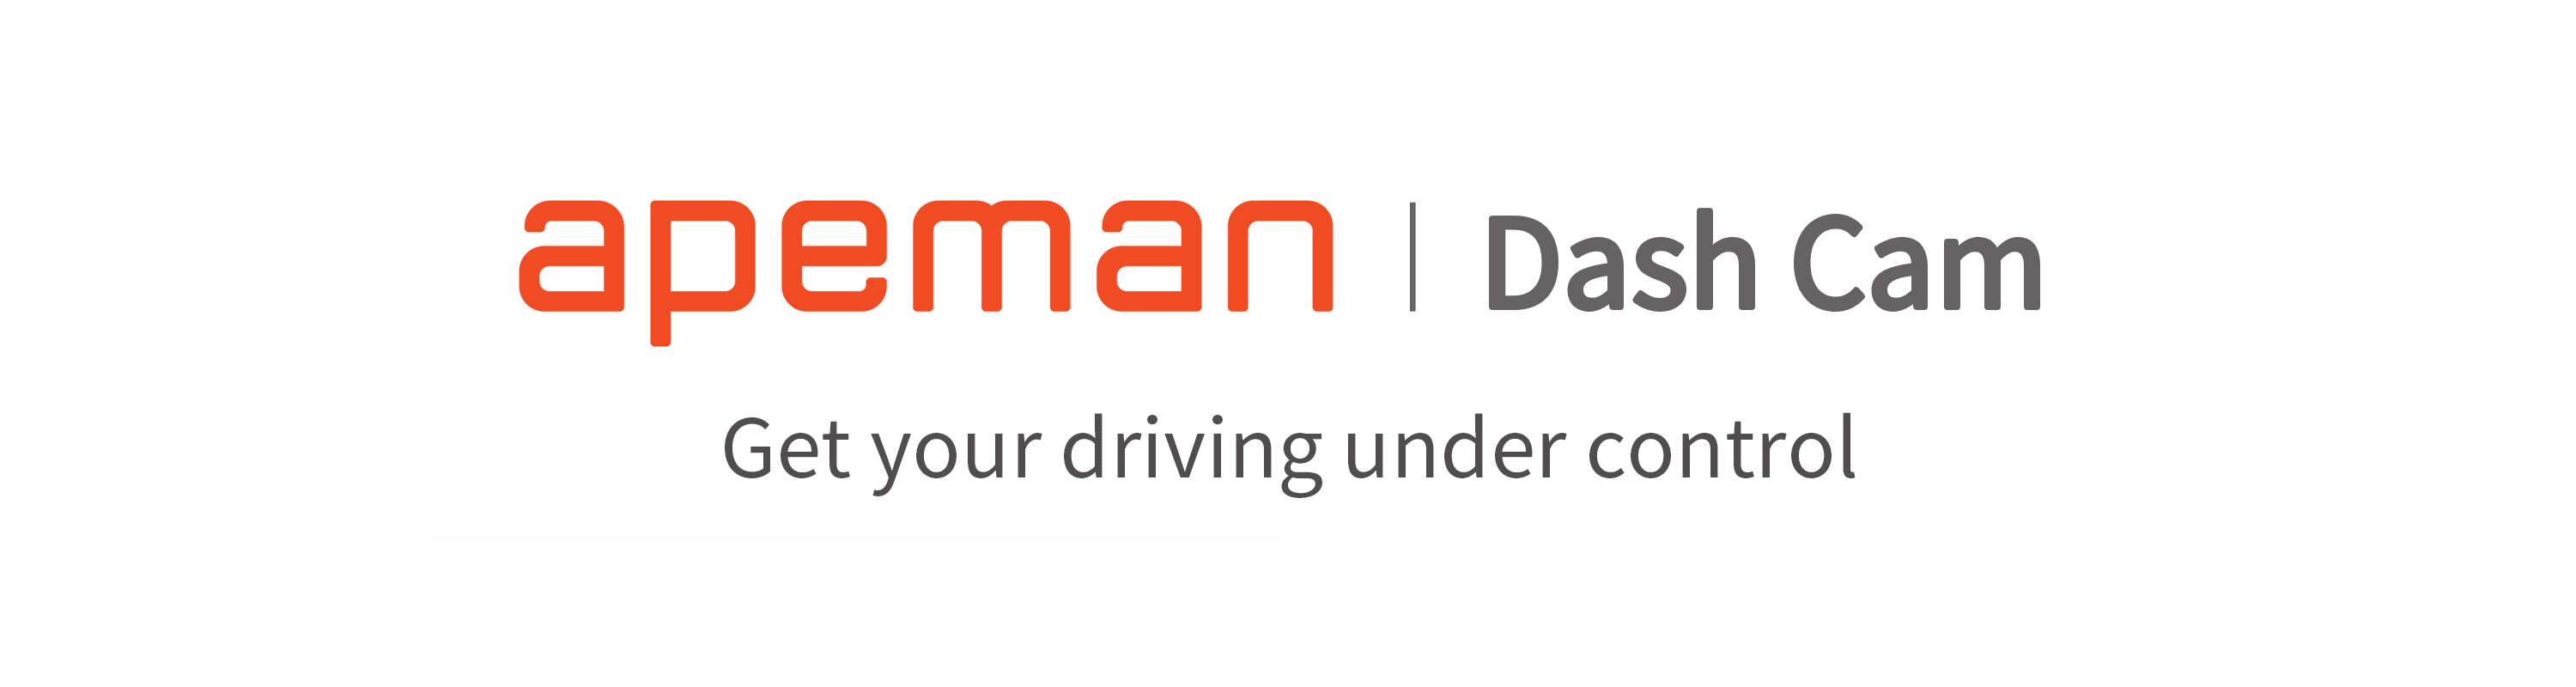 apeman C370 Mini Dash Cam – Apeman US